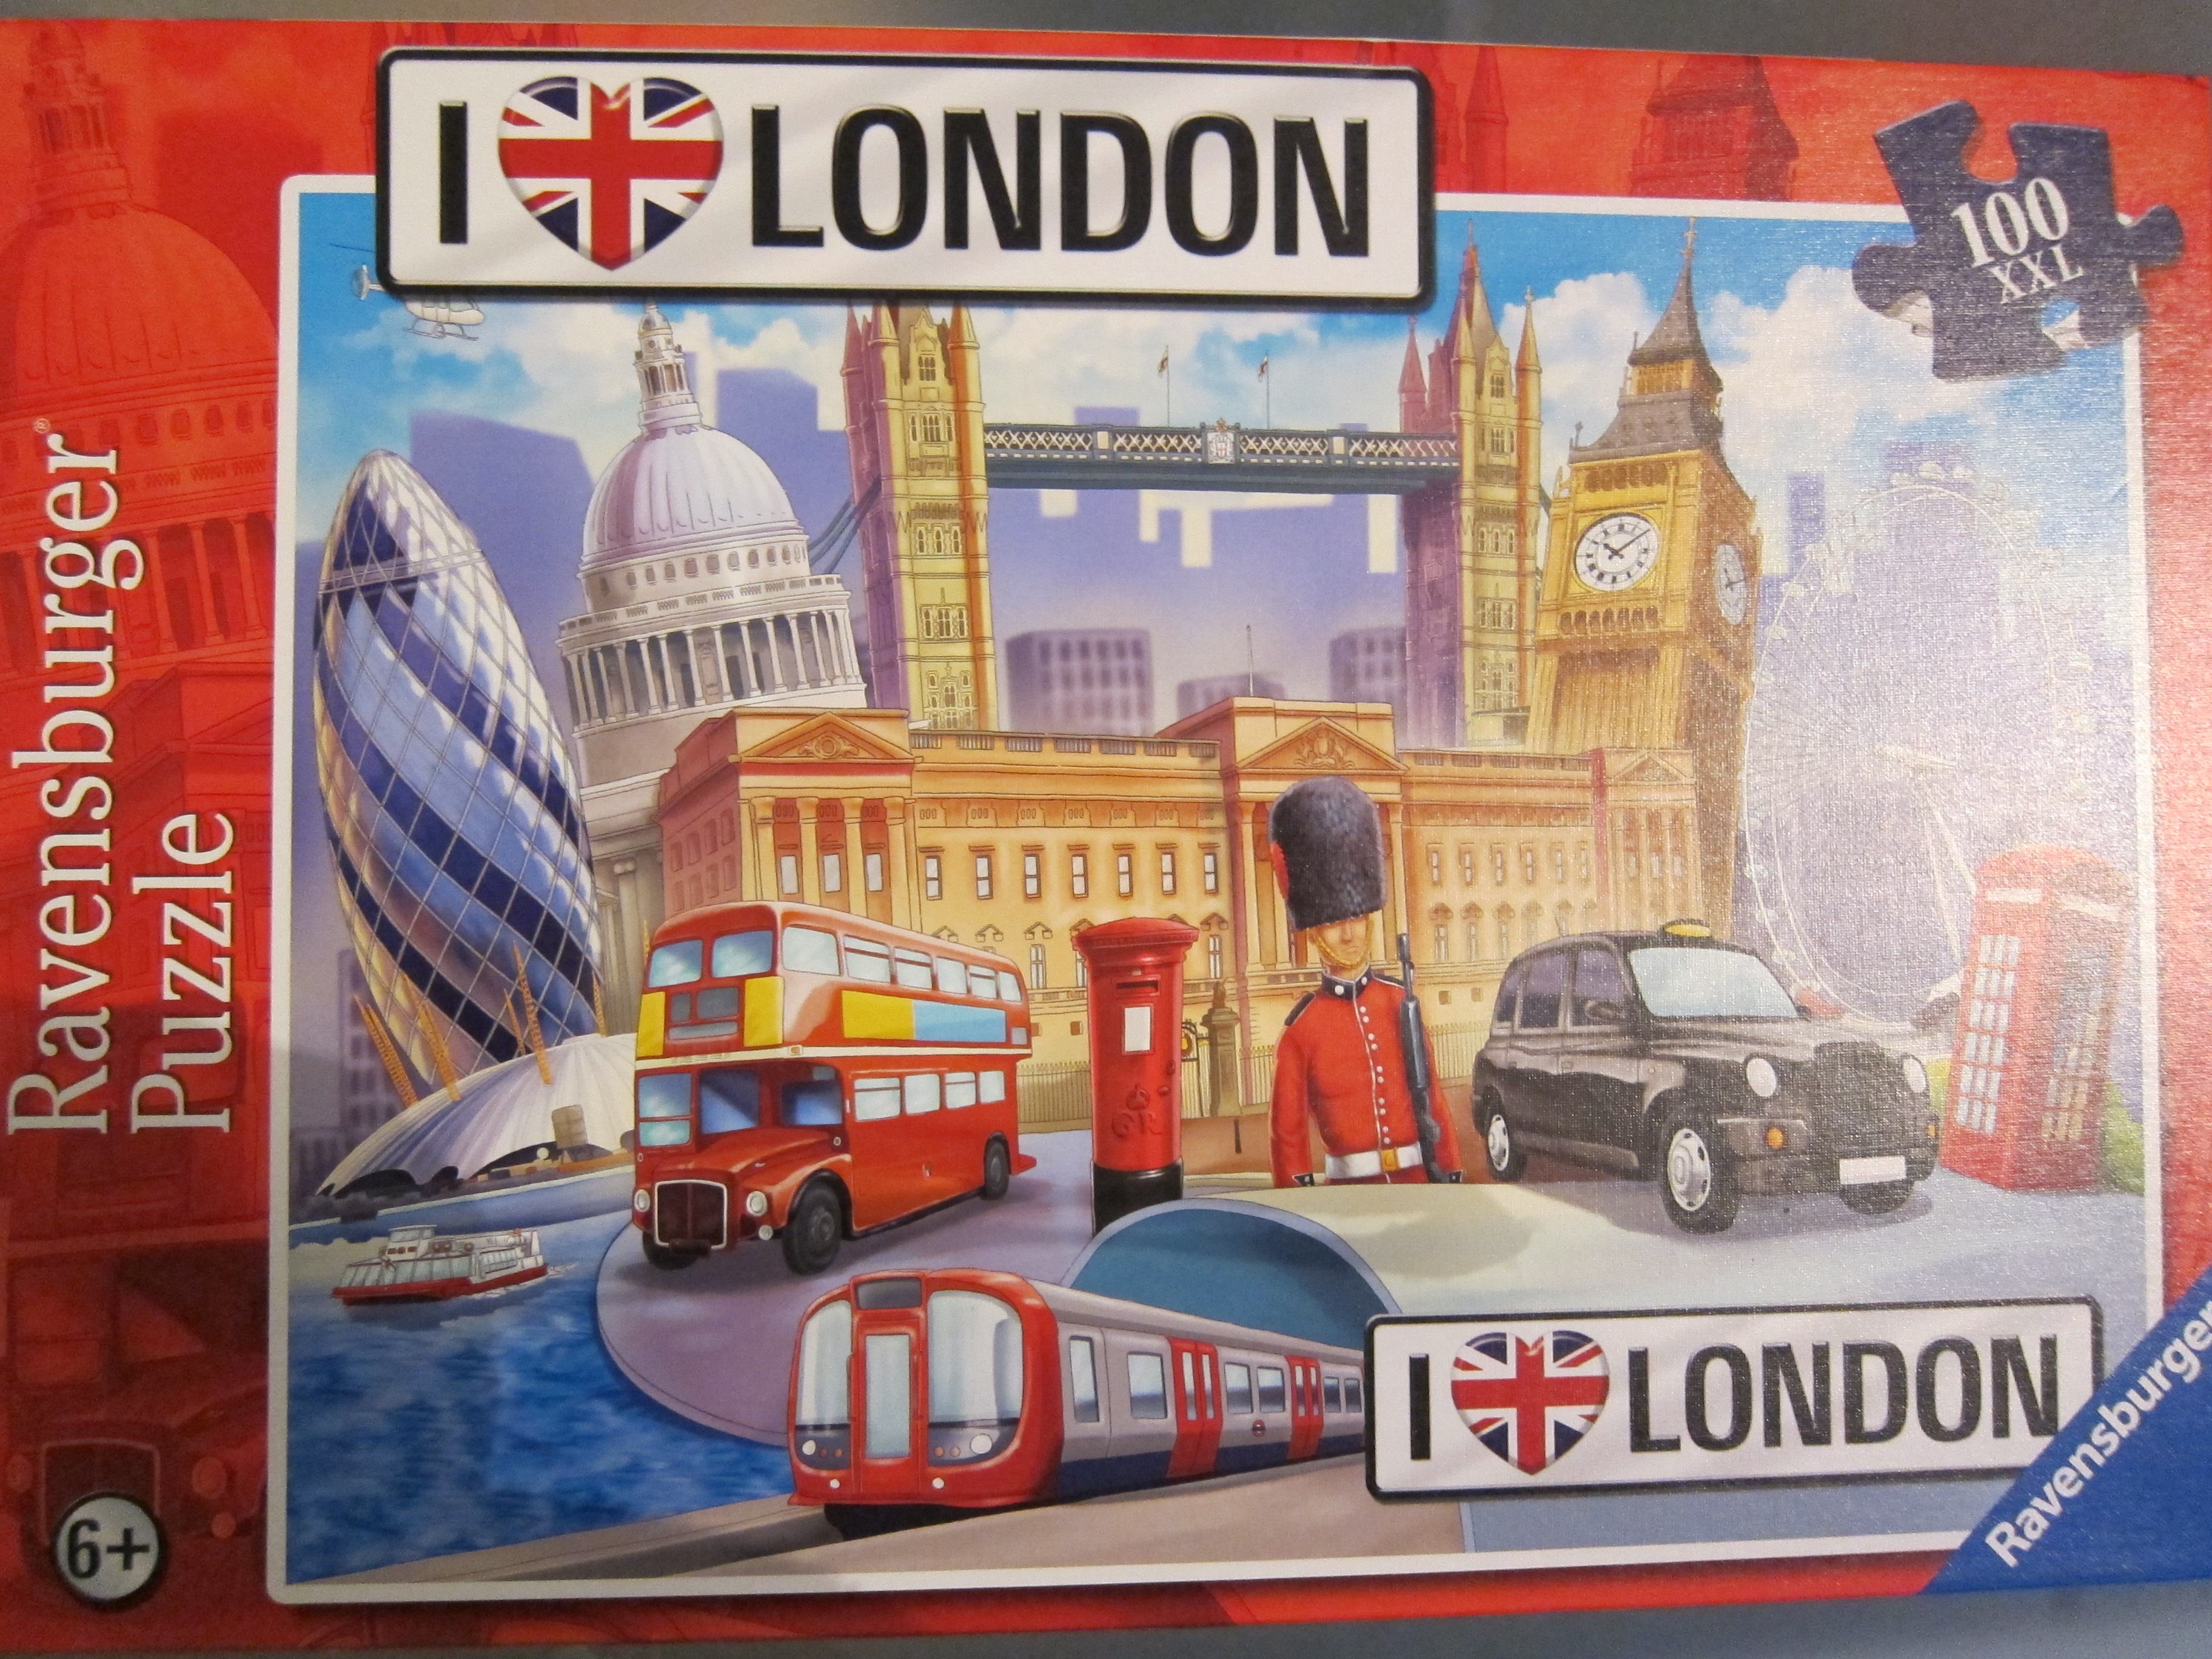 Ravensburger Puzzle Club: I â™¥ London 100 piece puzzle review